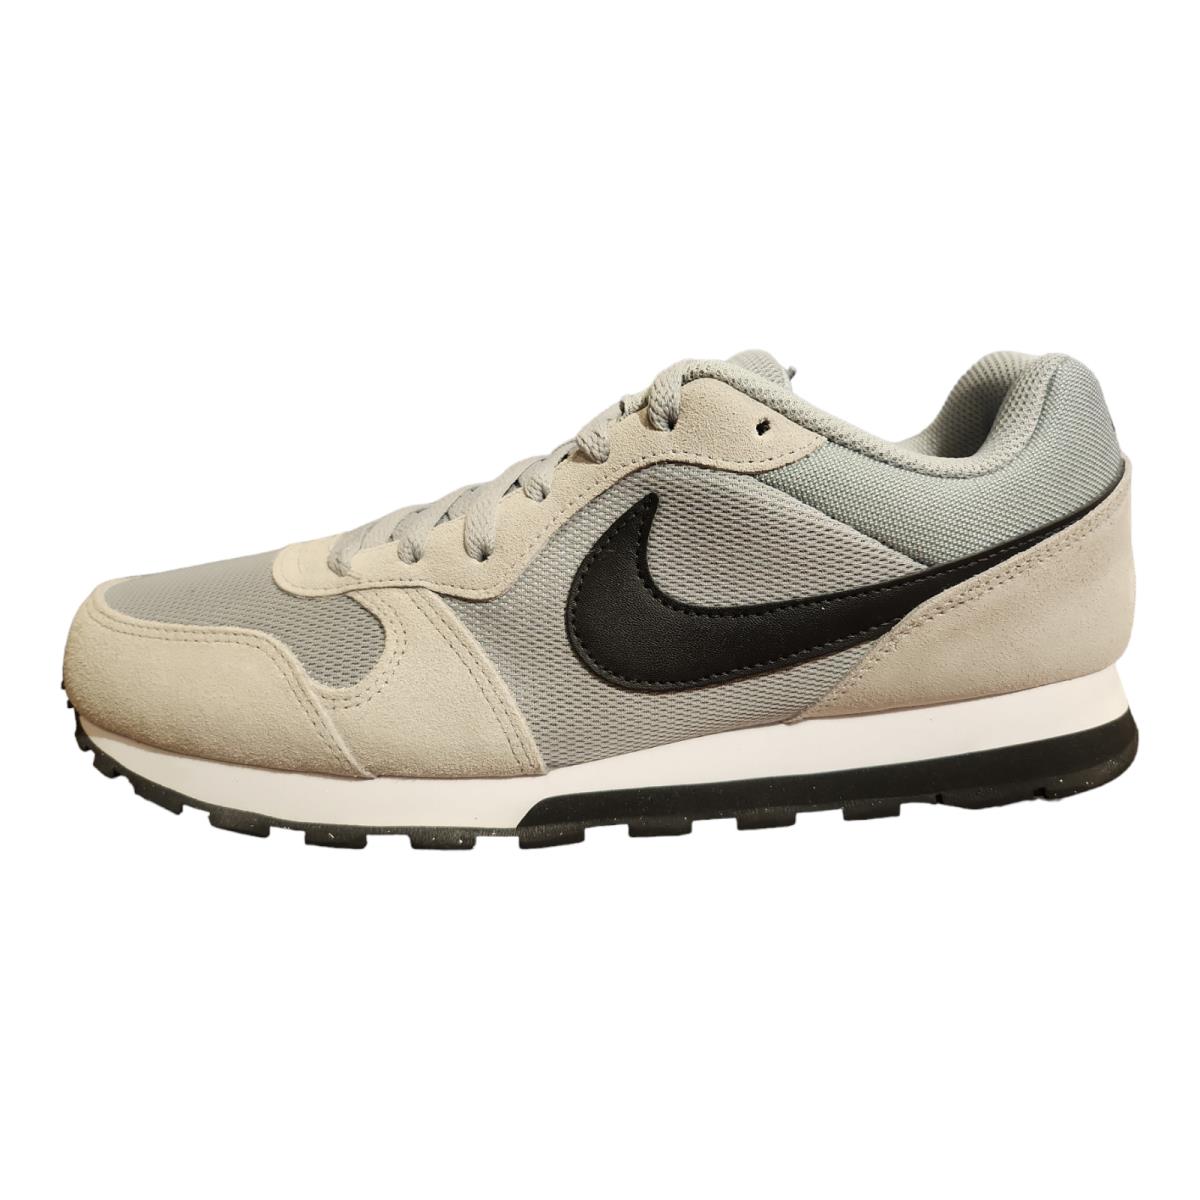 Nike Men`s Size 9.5 MD Runner 2 Running Shoes Wolf Gray Black-white 749794-001 - Gray